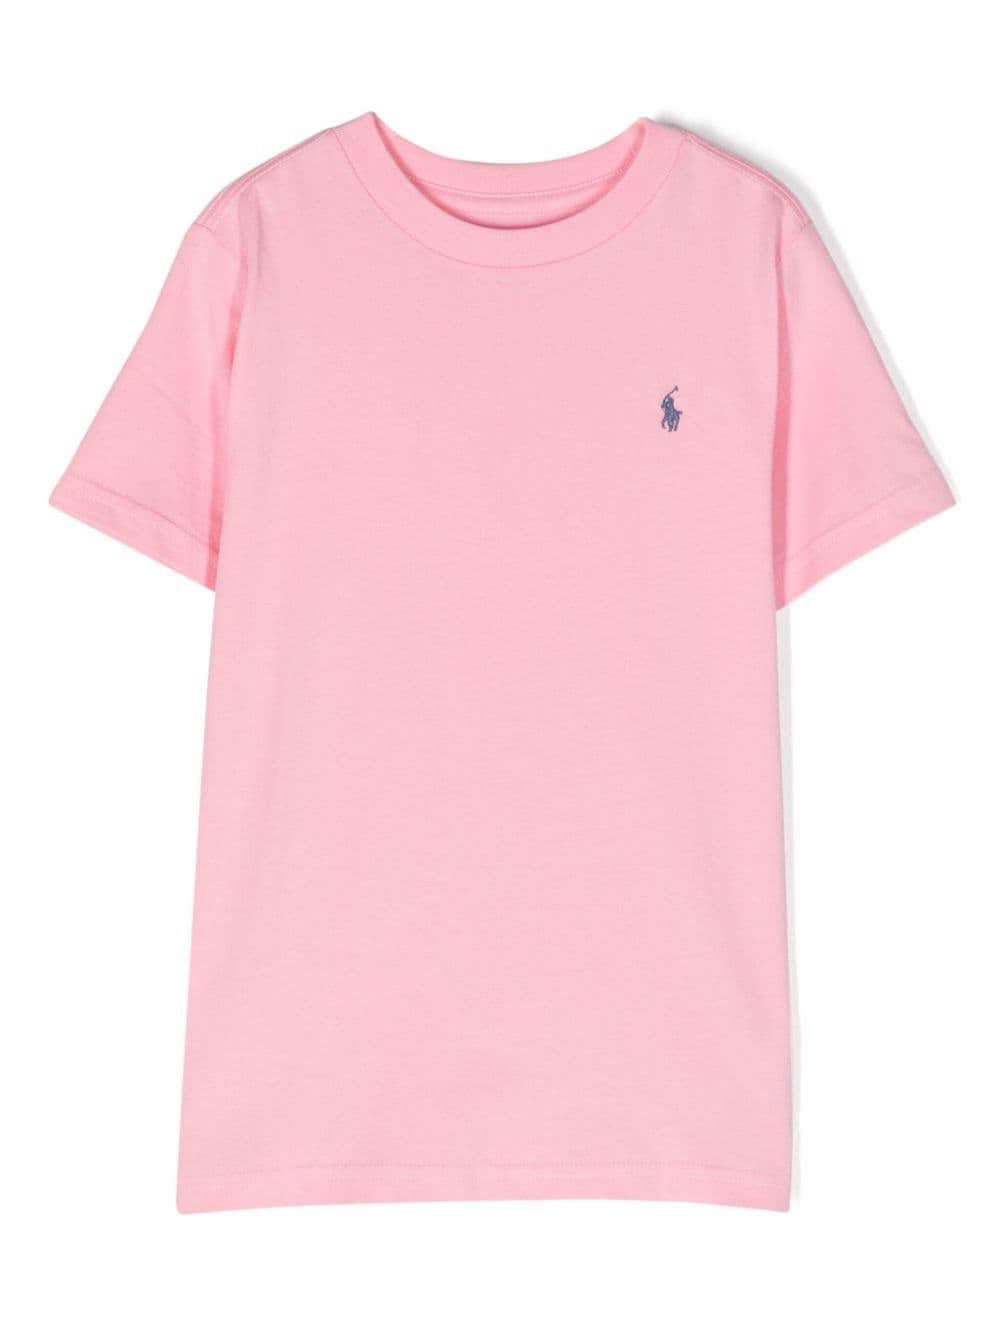 Ralph Lauren Kids Polo Pony-embroidered cotton T-shirt - Pink von Ralph Lauren Kids